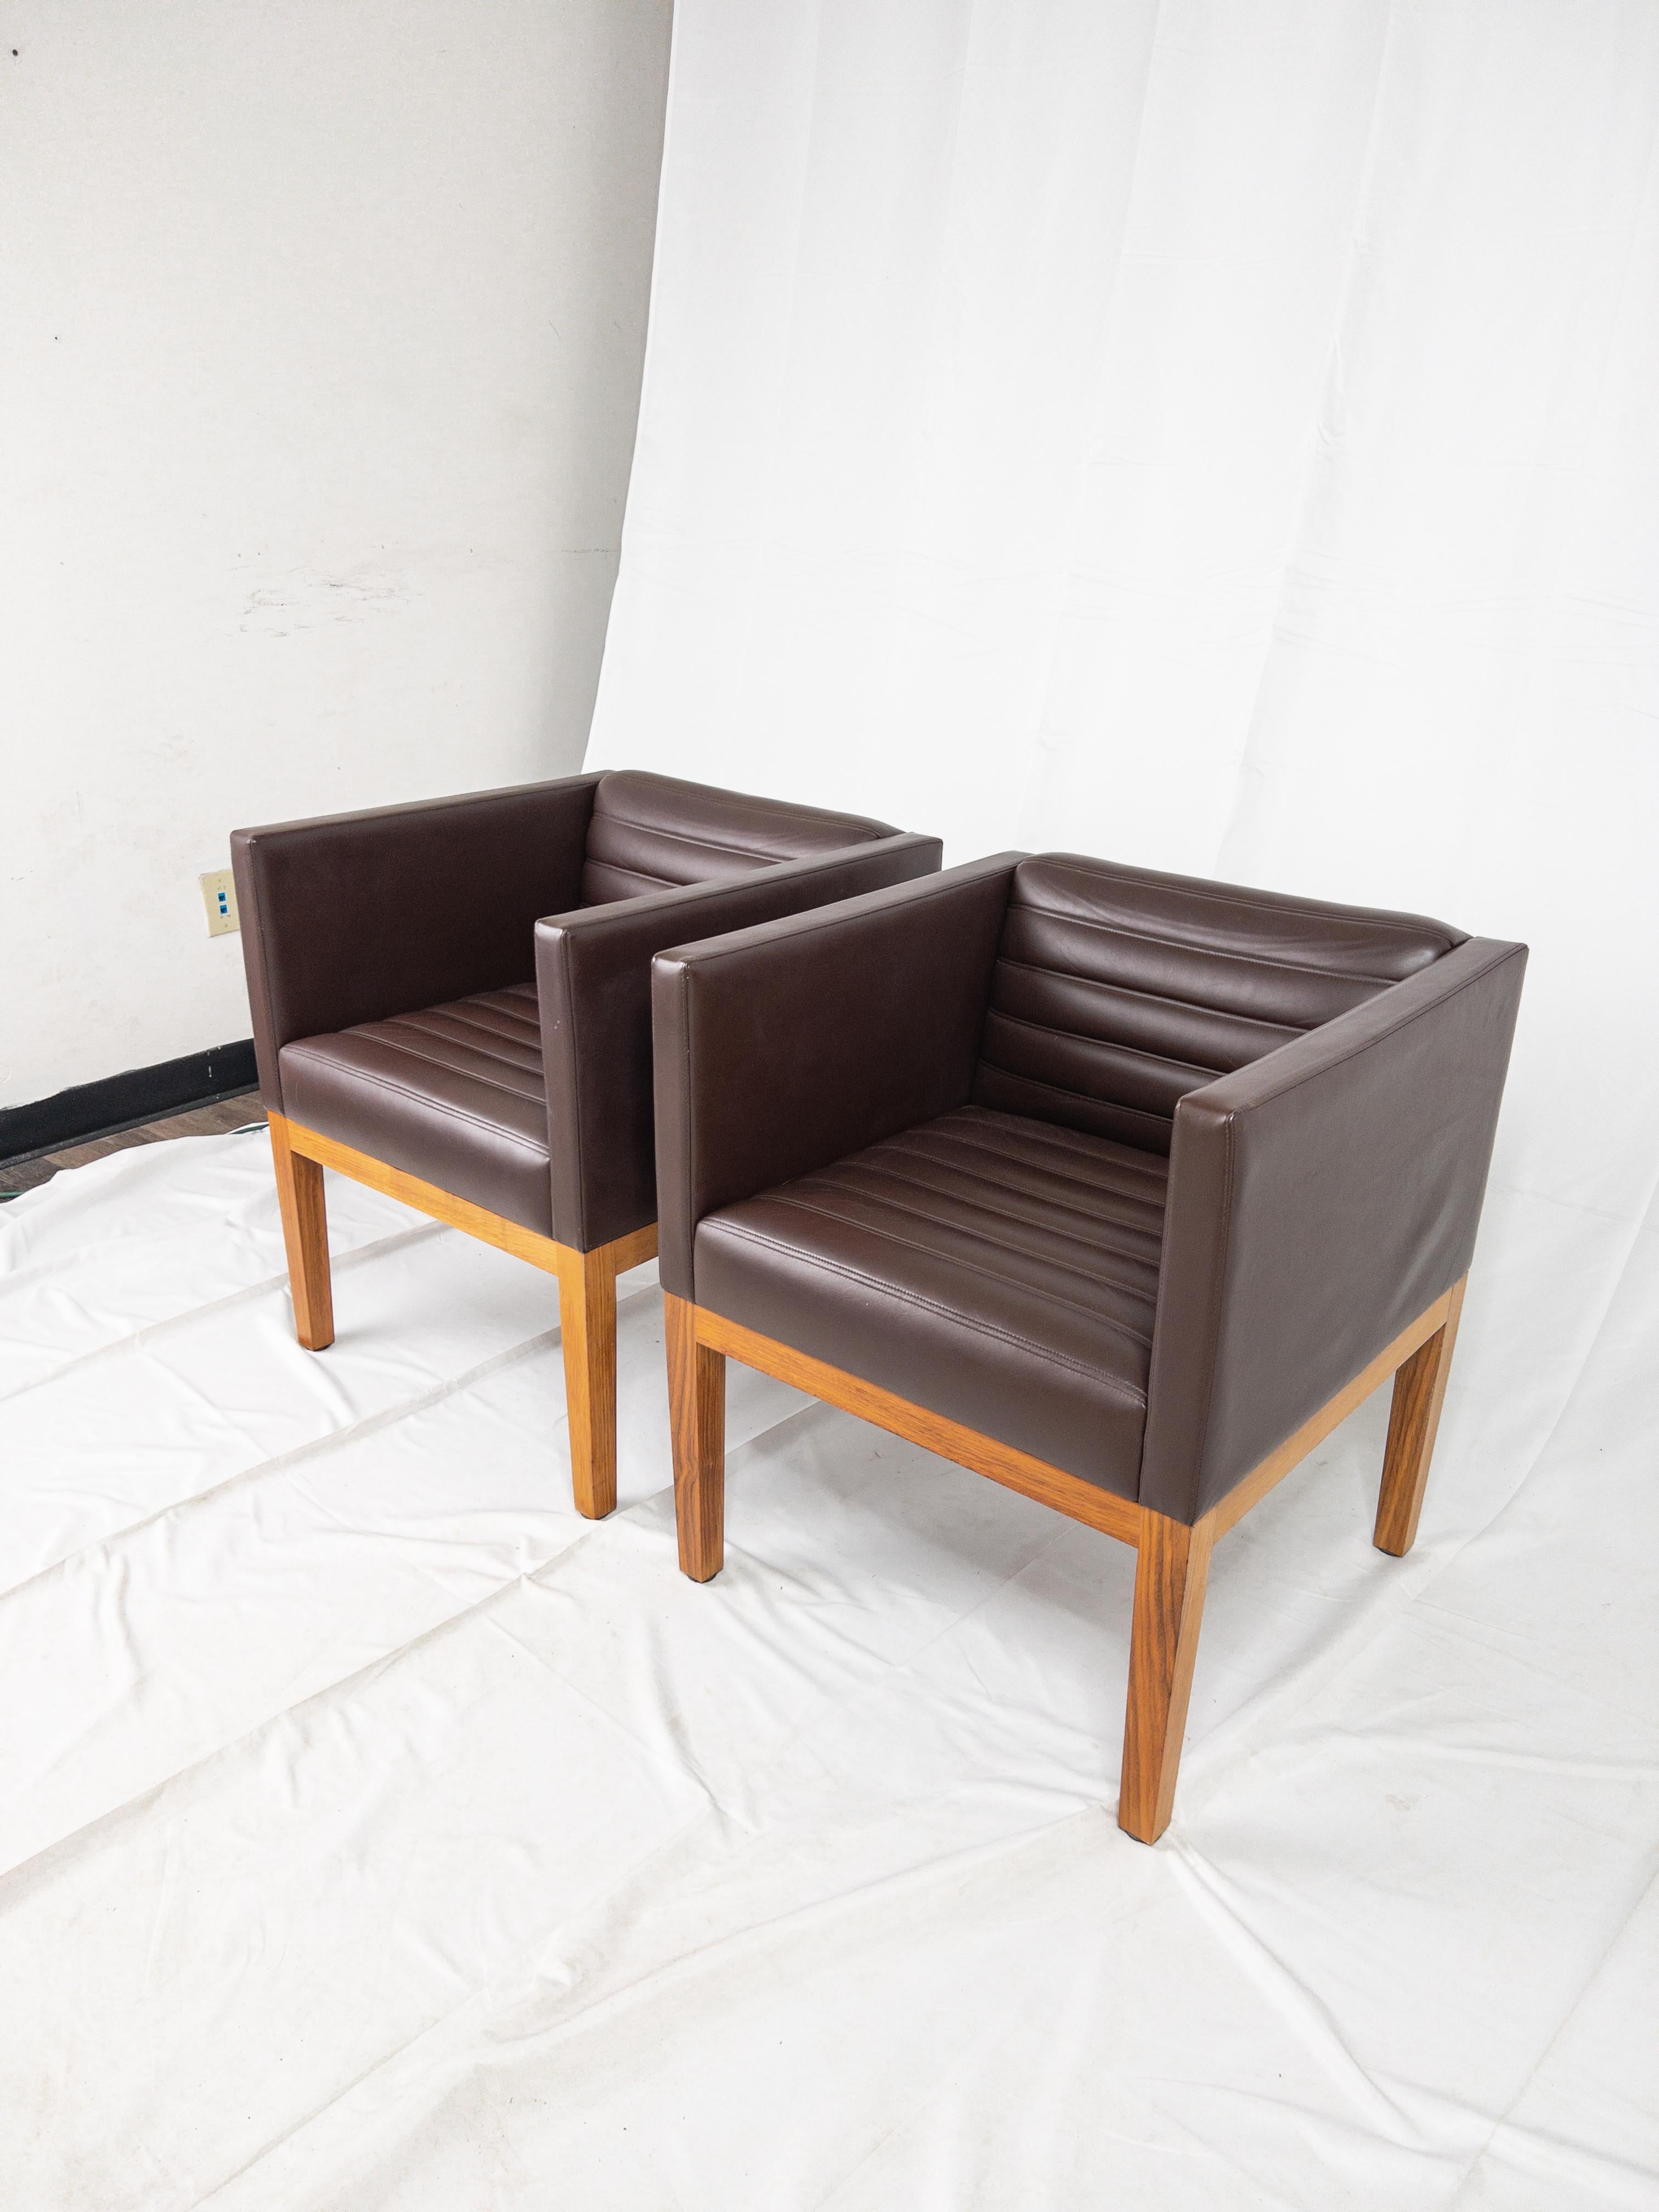 Illustrant l'apogée du design du milieu du siècle, la Fabulous Pair of Leather Arm Chairs, fabriquée par le célèbre Linley London, est une symphonie d'élégance et d'innovation. Ces chaises transcendent le temps grâce à leurs lignes épurées, alliant